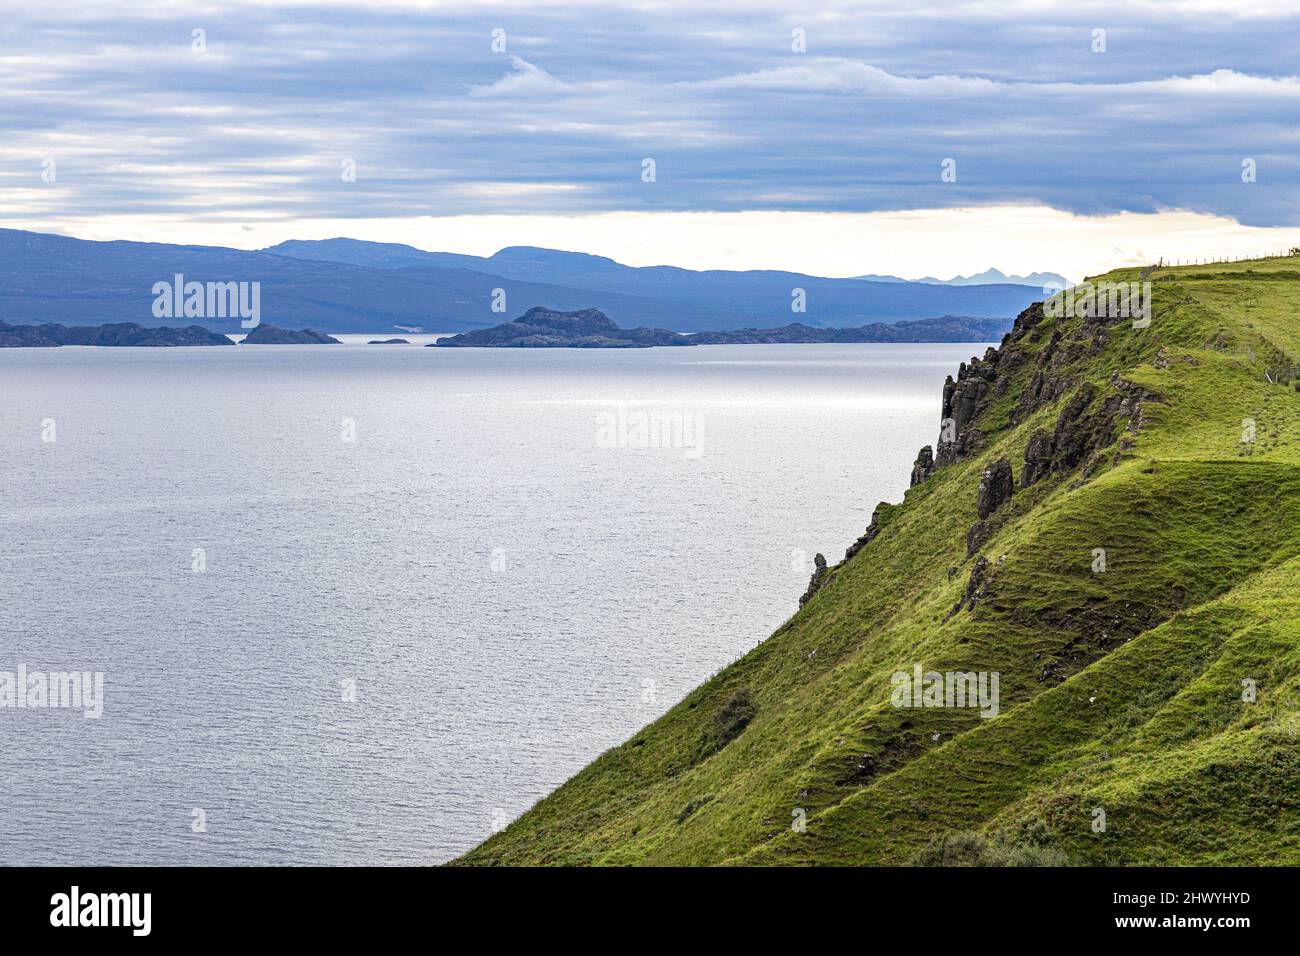 Vue sur le continent écossais depuis les chutes de Lealt, sur la côte nord-est de l'île de Skye, Highland, Écosse, Royaume-Uni. L'île de Rona est au premier plan. Banque D'Images